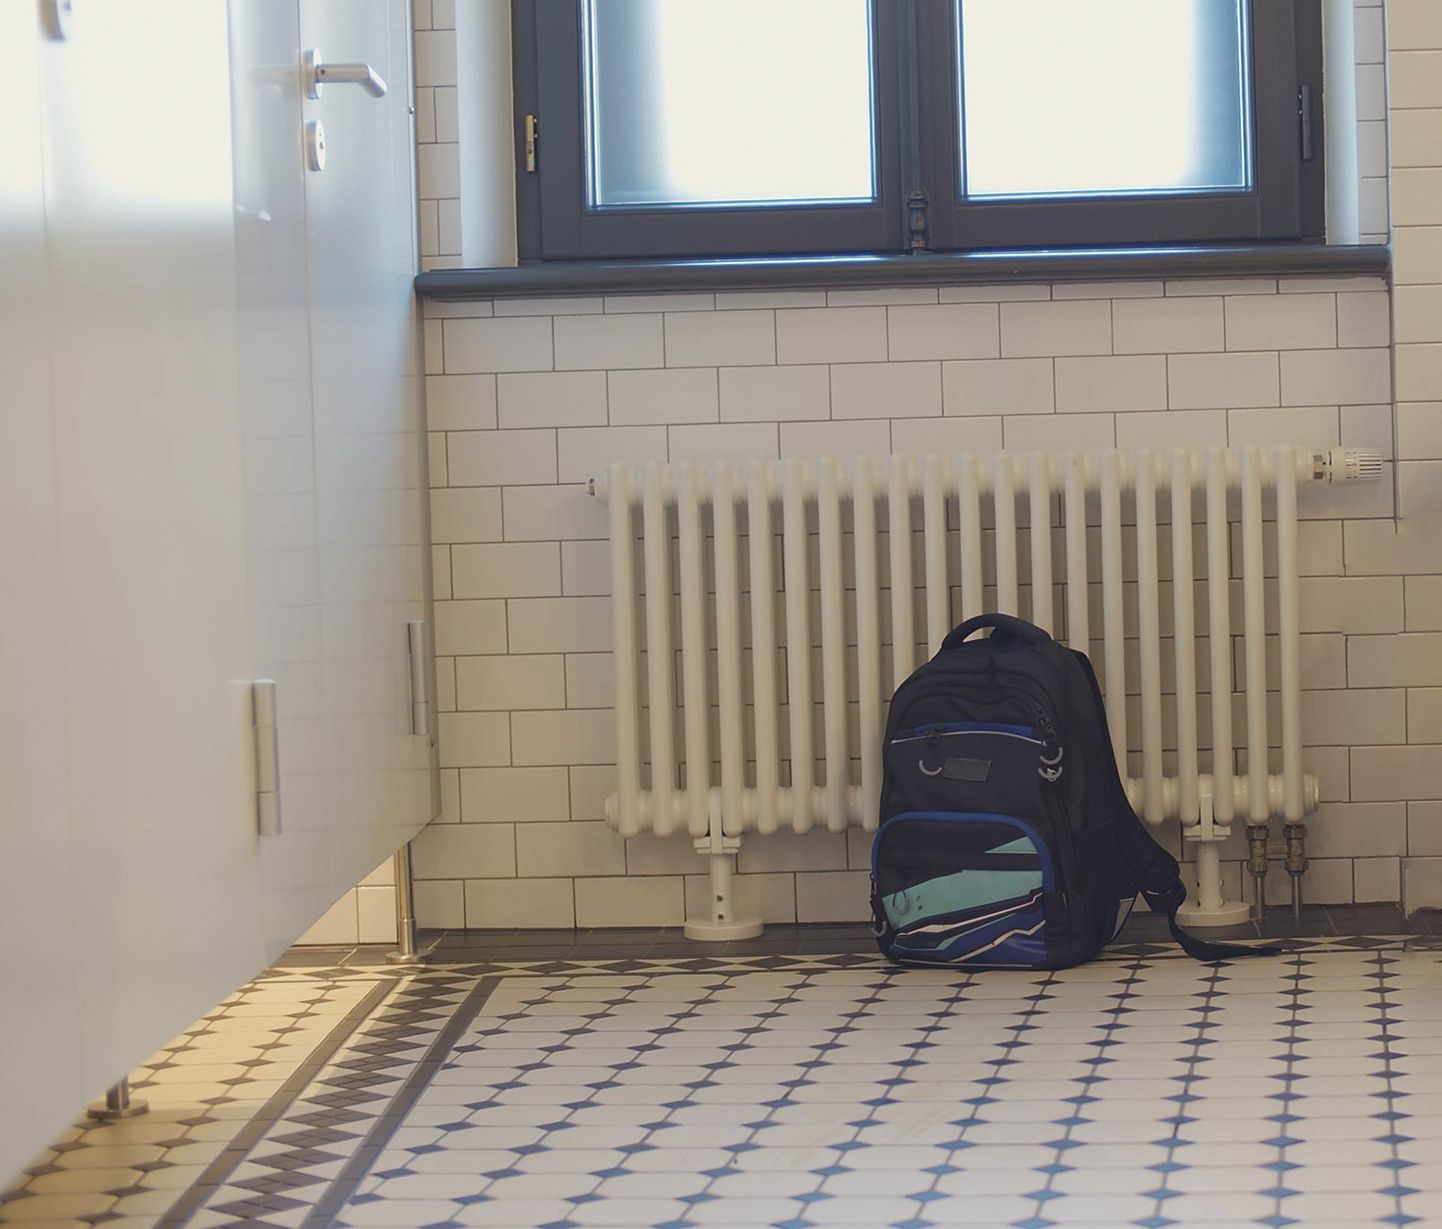 Kaks noorukit vedasid noorema õpilase ühes Pärnumaa koolis WCsse ja üritasid teda peadpidi potti suruda.